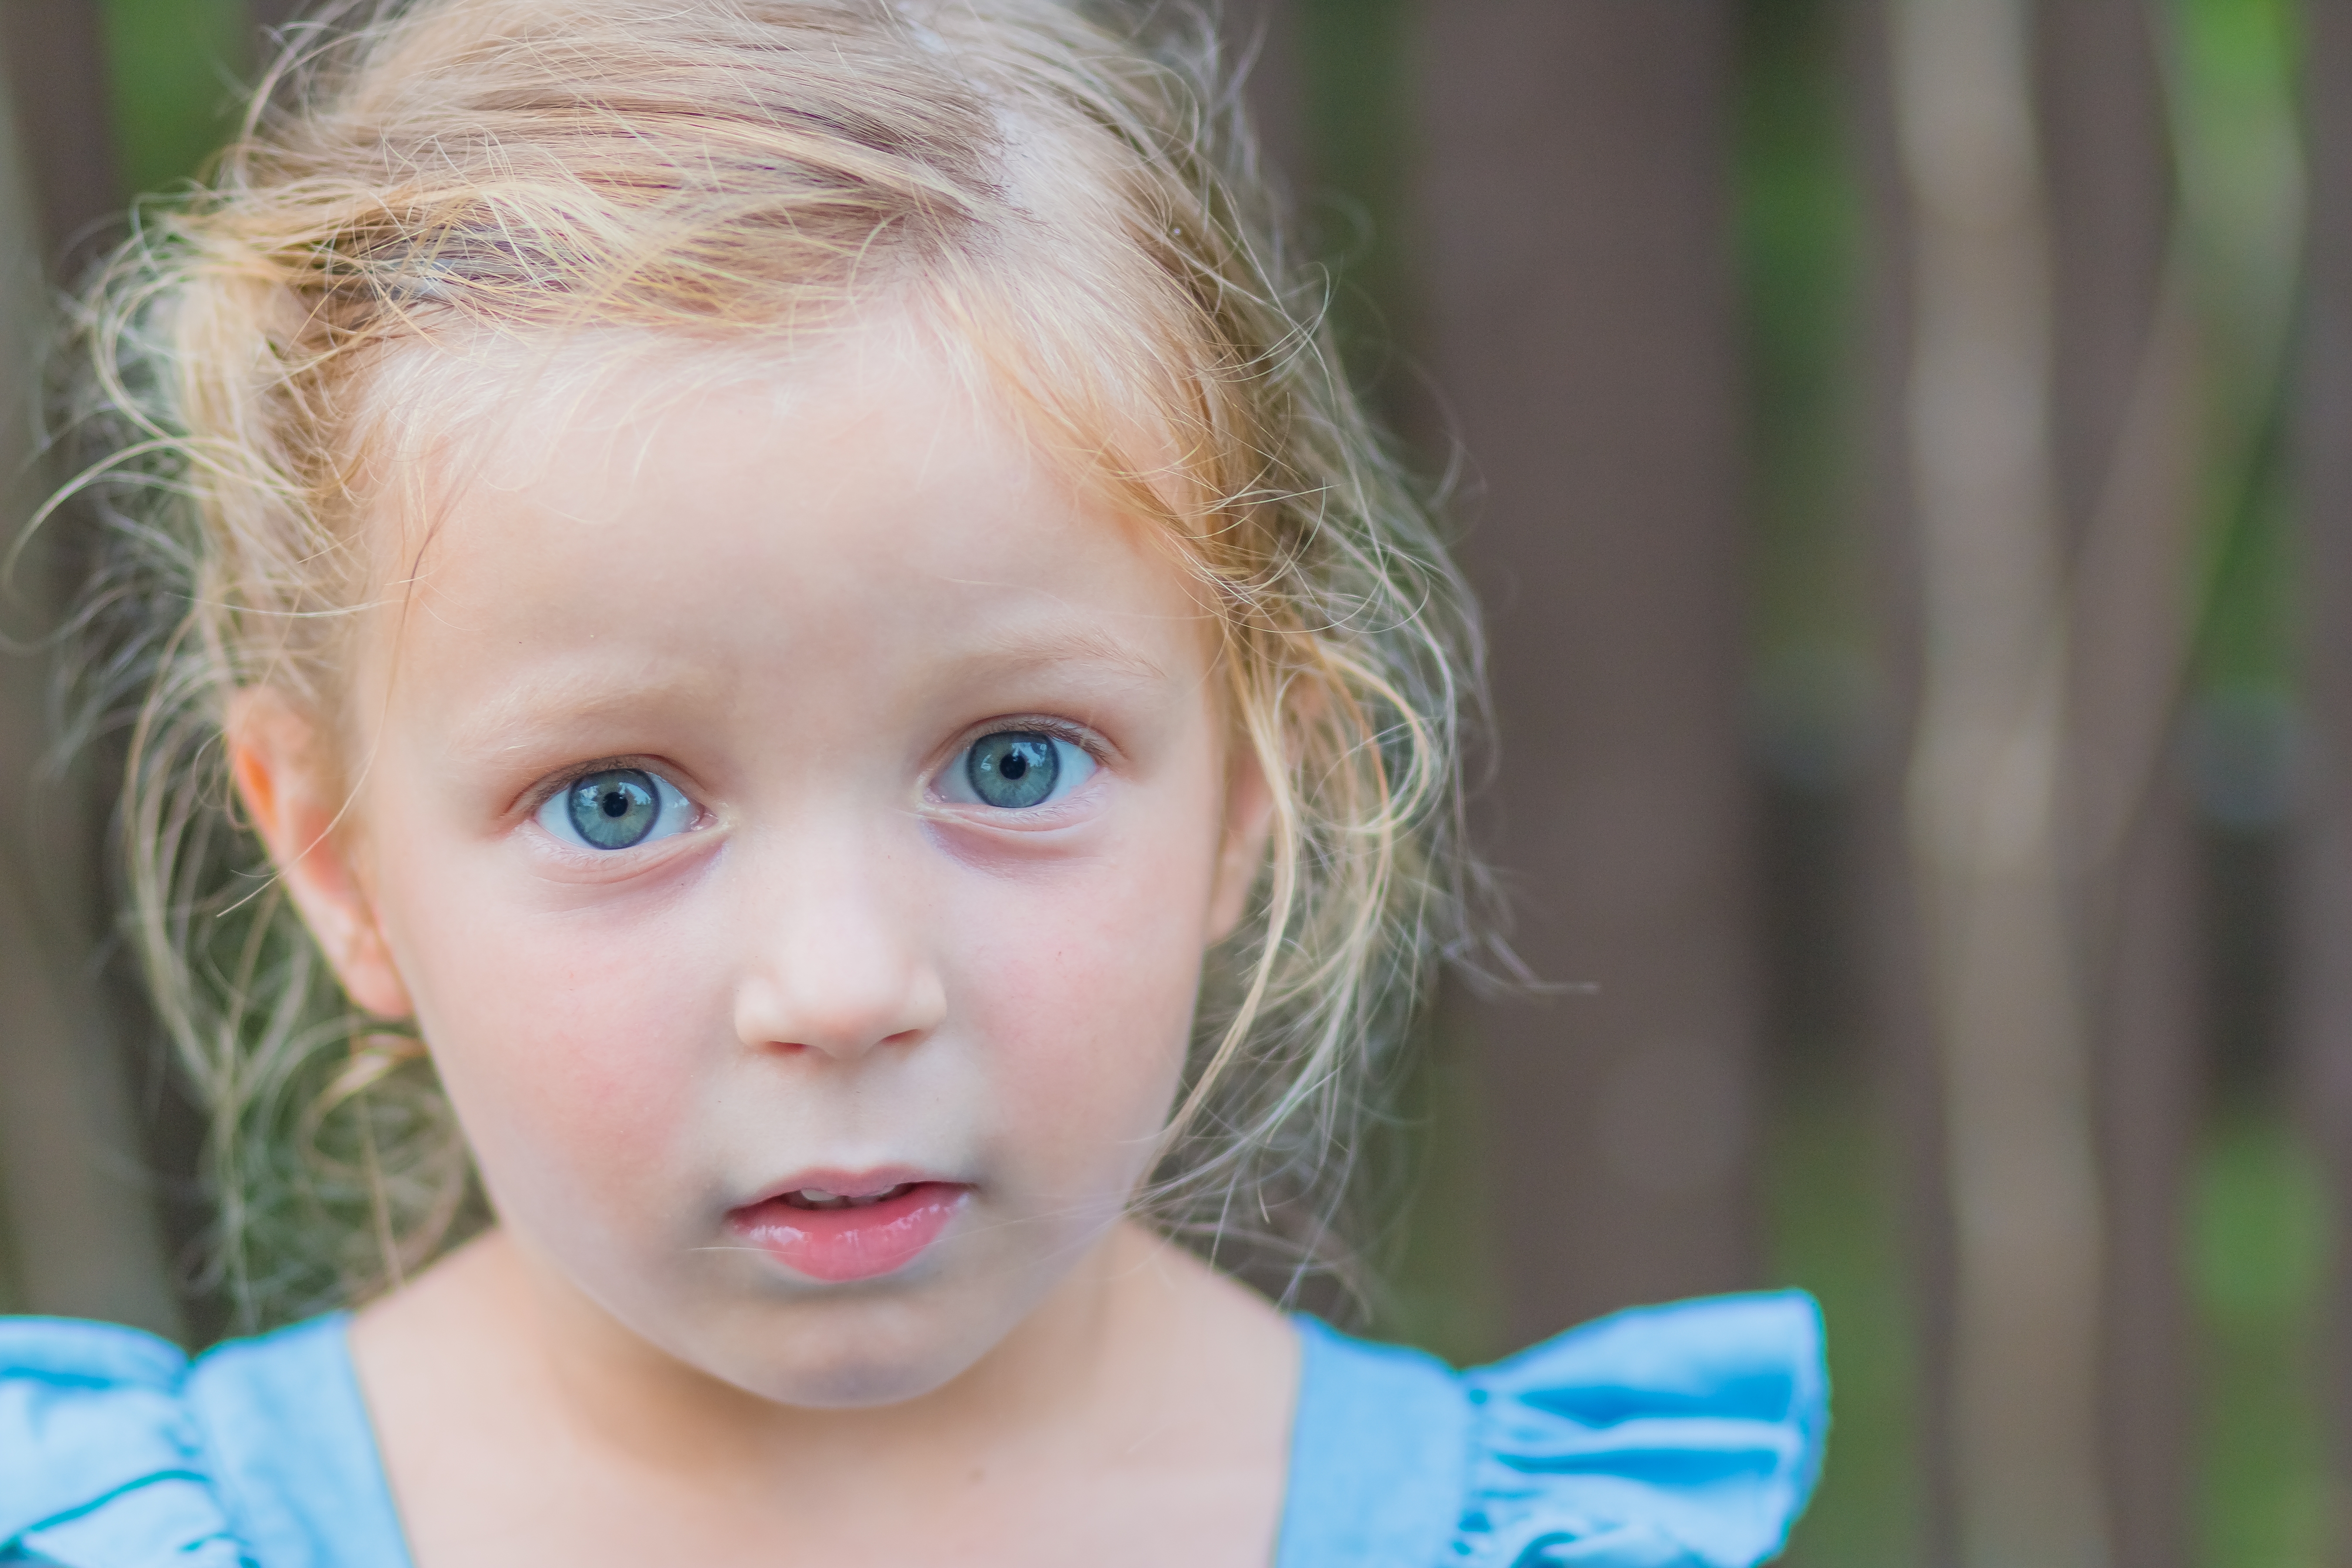 Una dulce niña de tres años. La niña sonríe y mira a la cámara. | Fuente: Shutterstock